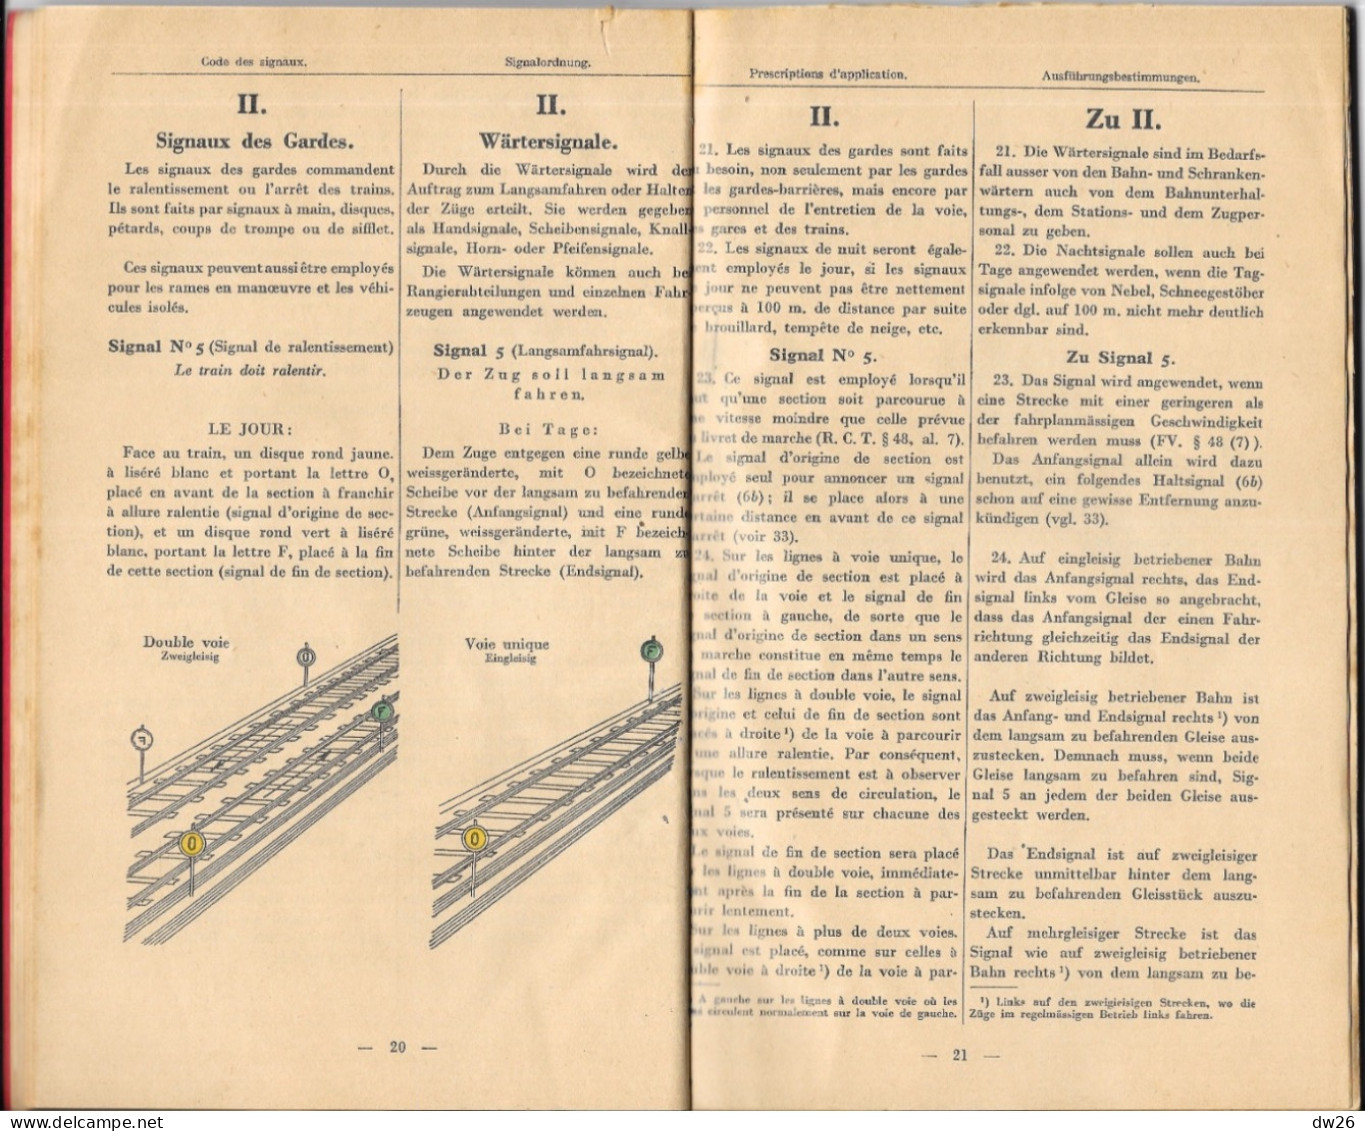 Chemins De Fer D'Alsace Et De Lorraine Et Du Luxembourg - Livret: Règlements Pour Les Signaux 1933 - Ferrocarril